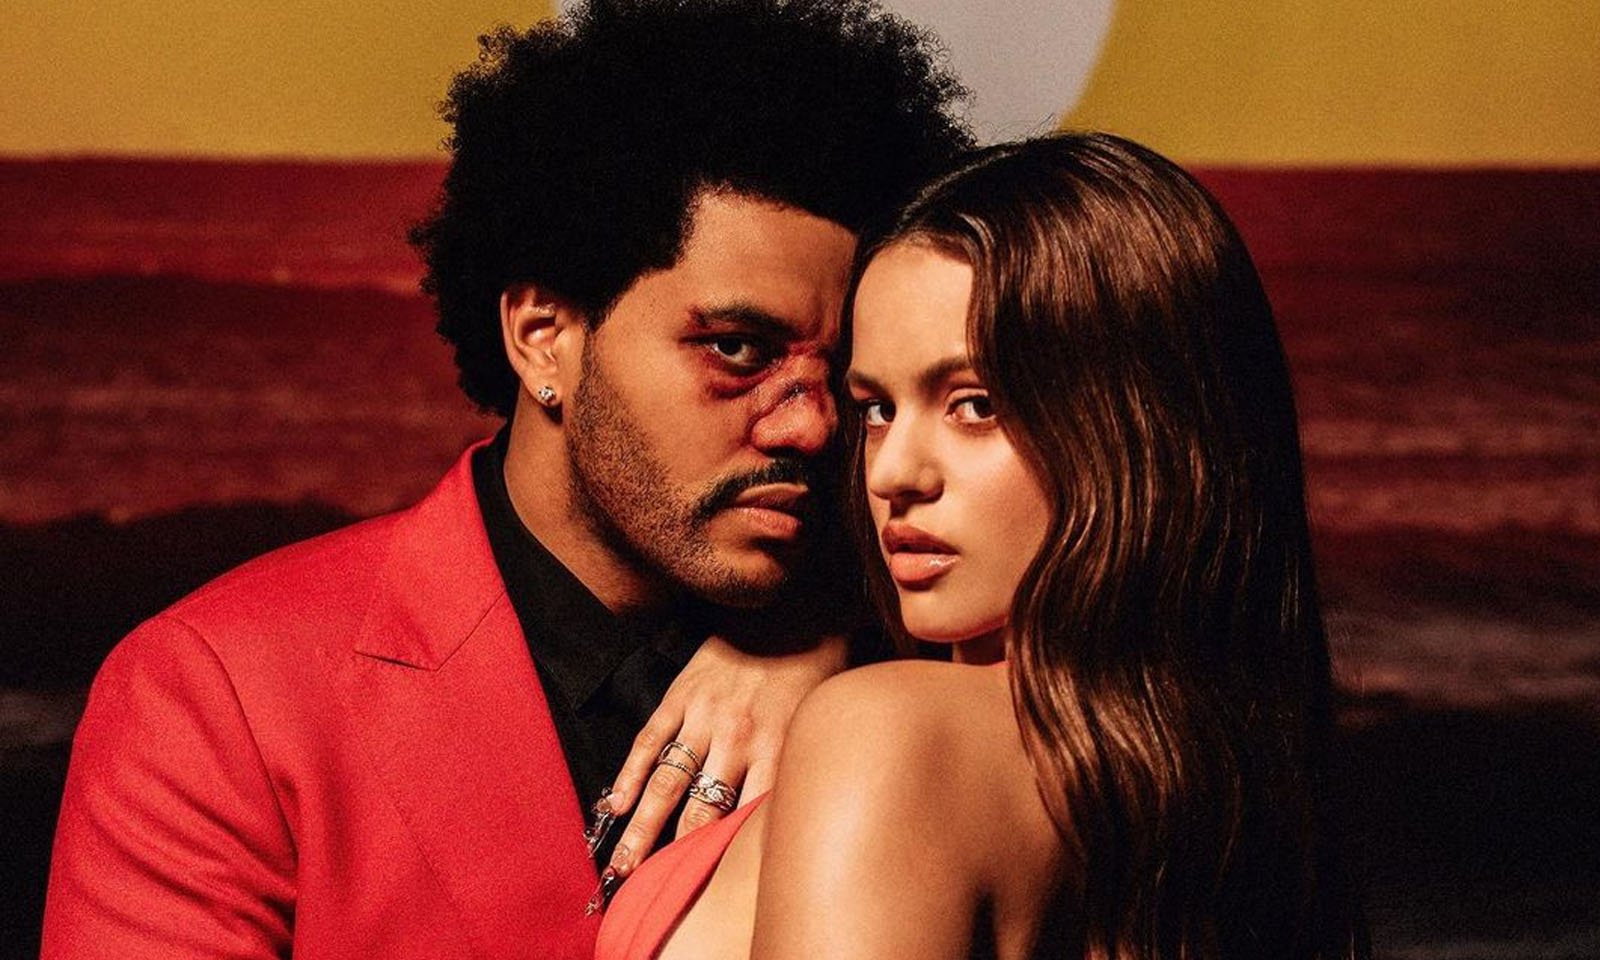 Rosalía pode cantar com The Weeknd no Super Bowl, diz revista